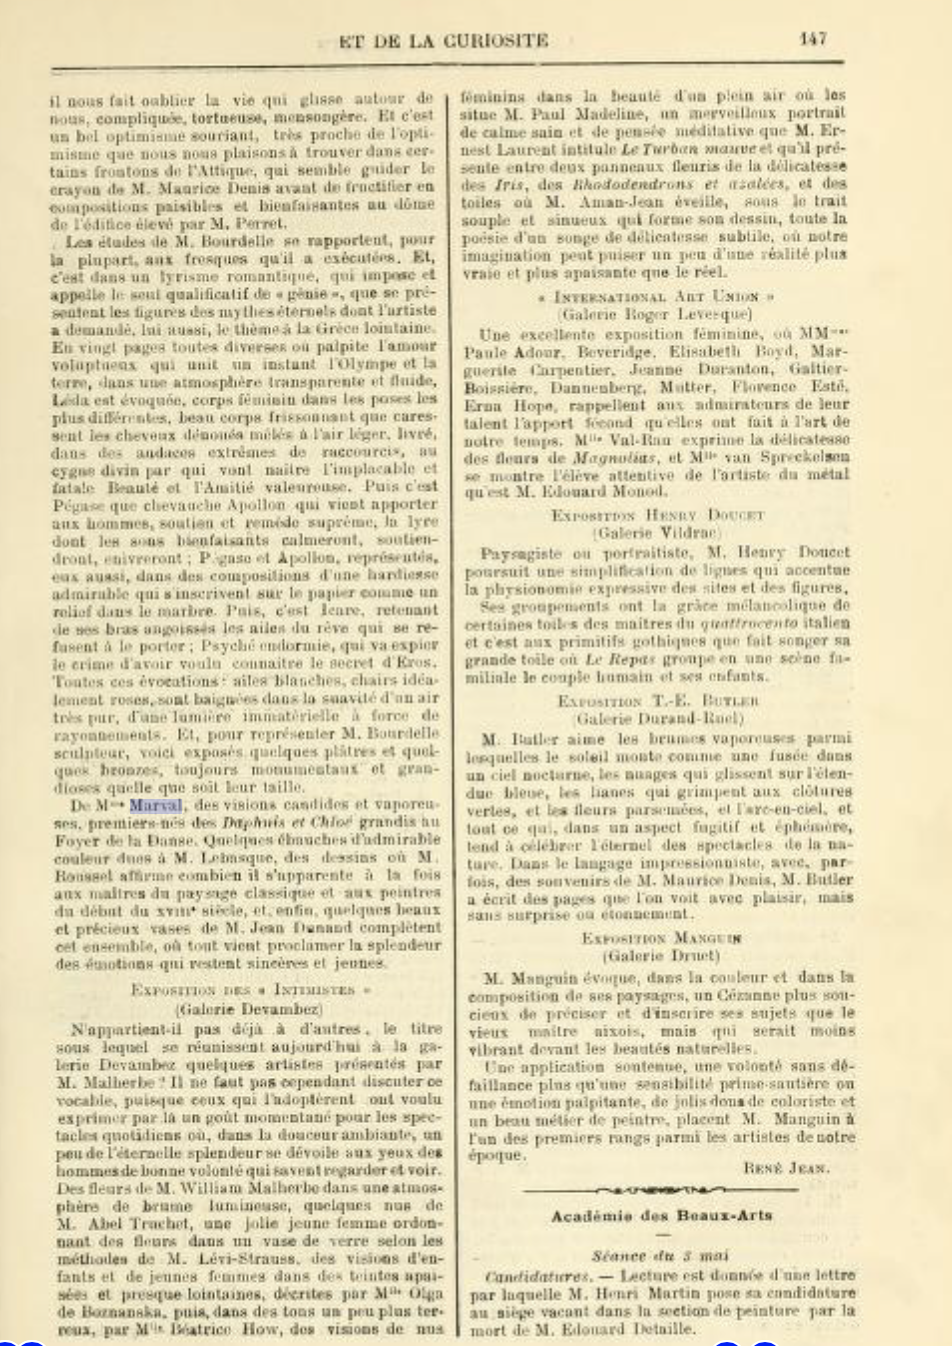 Chronique des Arts et de la Curiosité, Gazette des Beaux-Arts, mai 1913